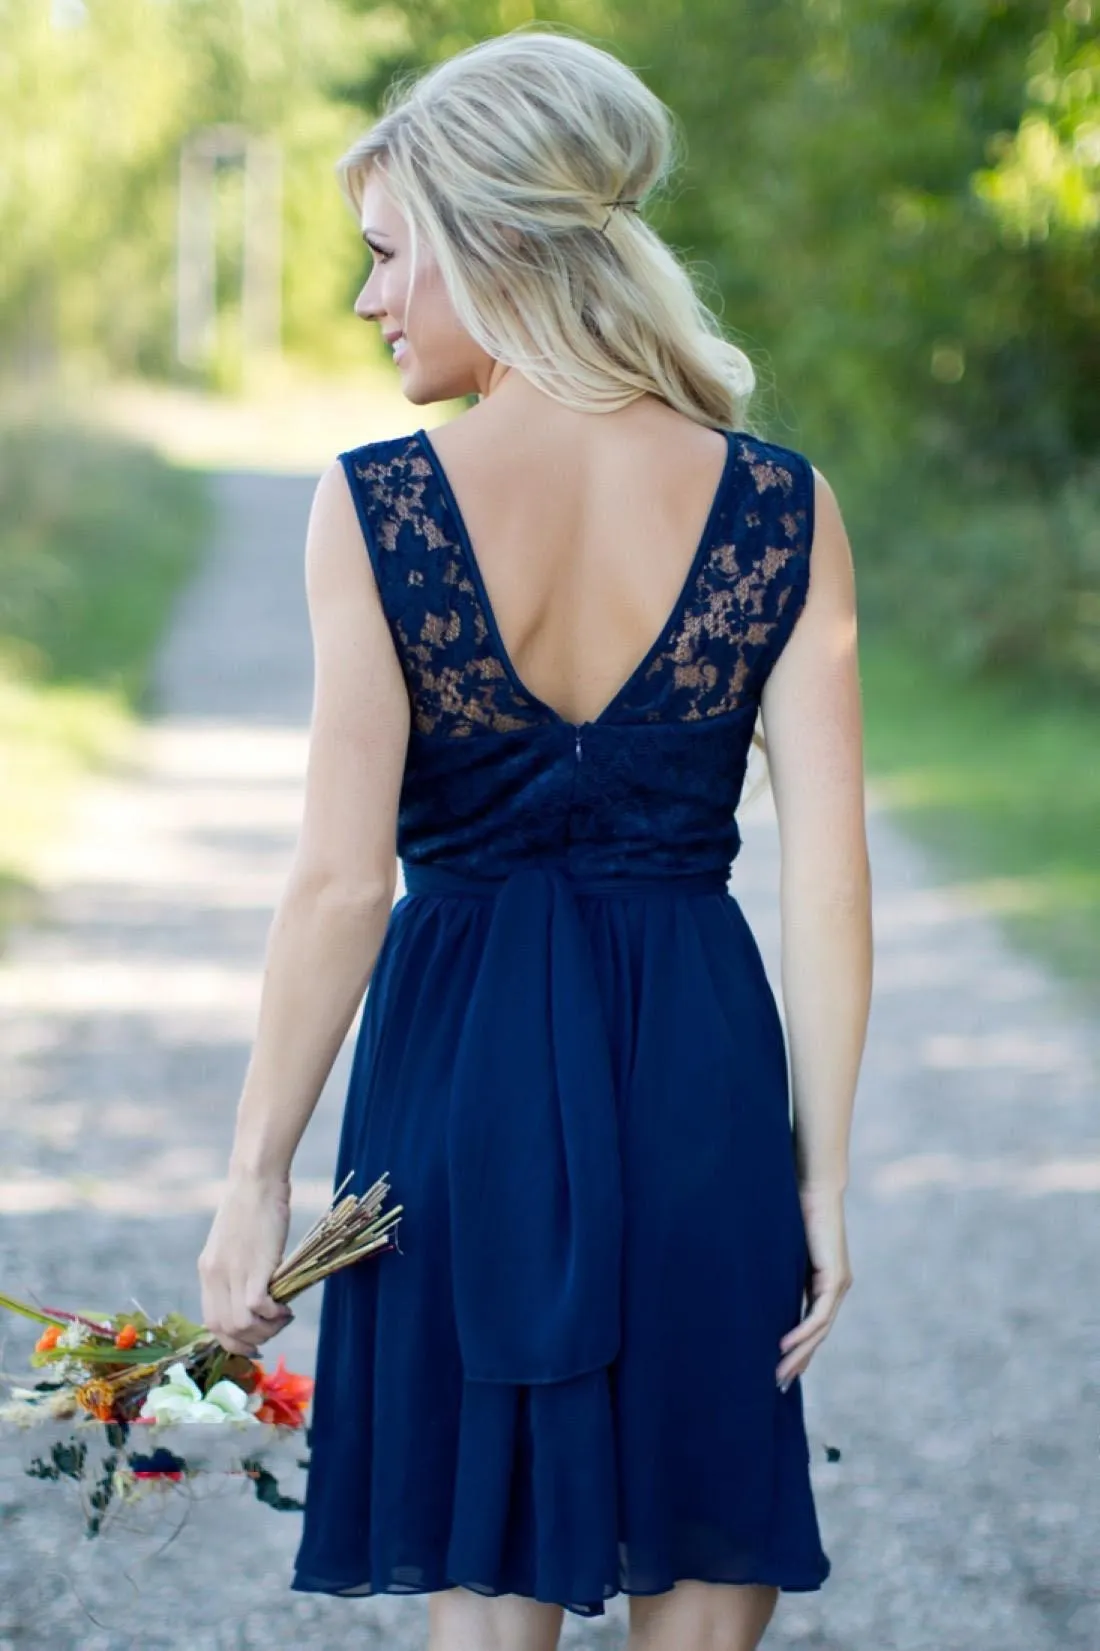 Landstijl Royal Blue Chiffon Lace Short Bruidsmeisje jurken voor bruiloften goedkoop juweel backless knie lengte casual jurken185c